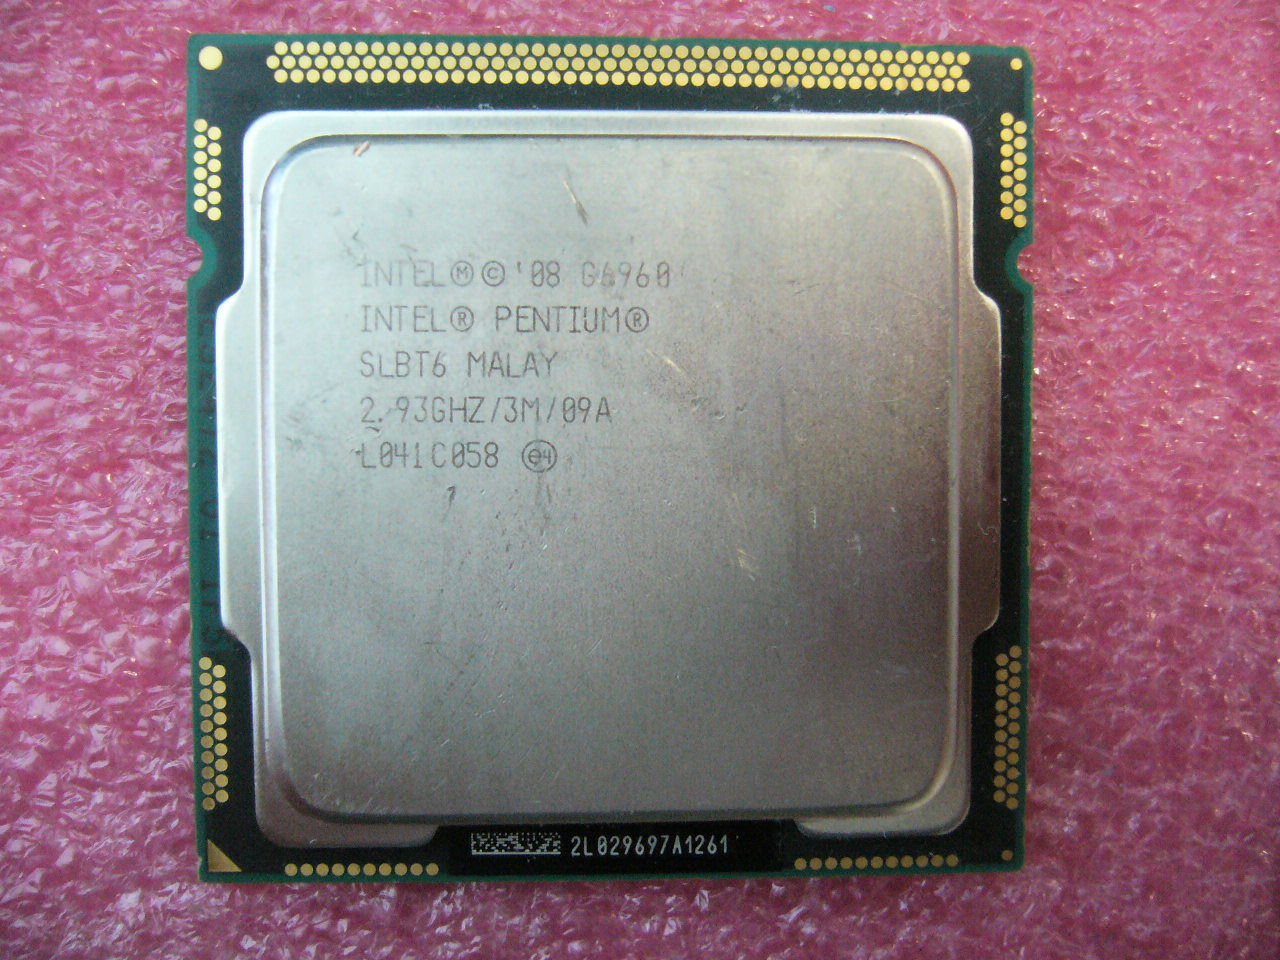 QTY 1x INTEL Pentium CPU G6960 2.93GHZ/3MB LGA1156 SLBT6